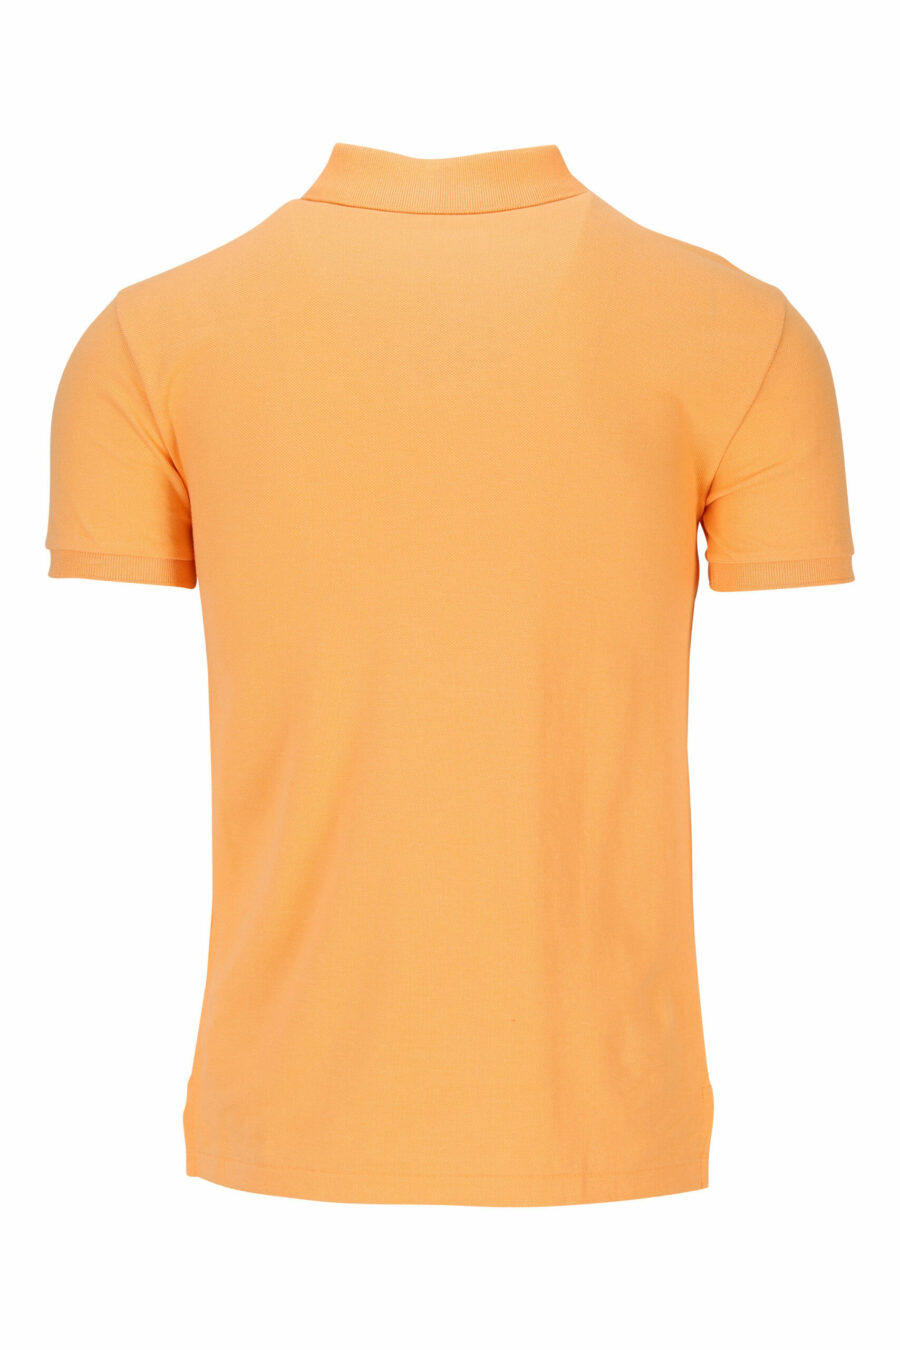 Pólo laranja com mini-logotipo "polo" - 3616411864697 1 à escala